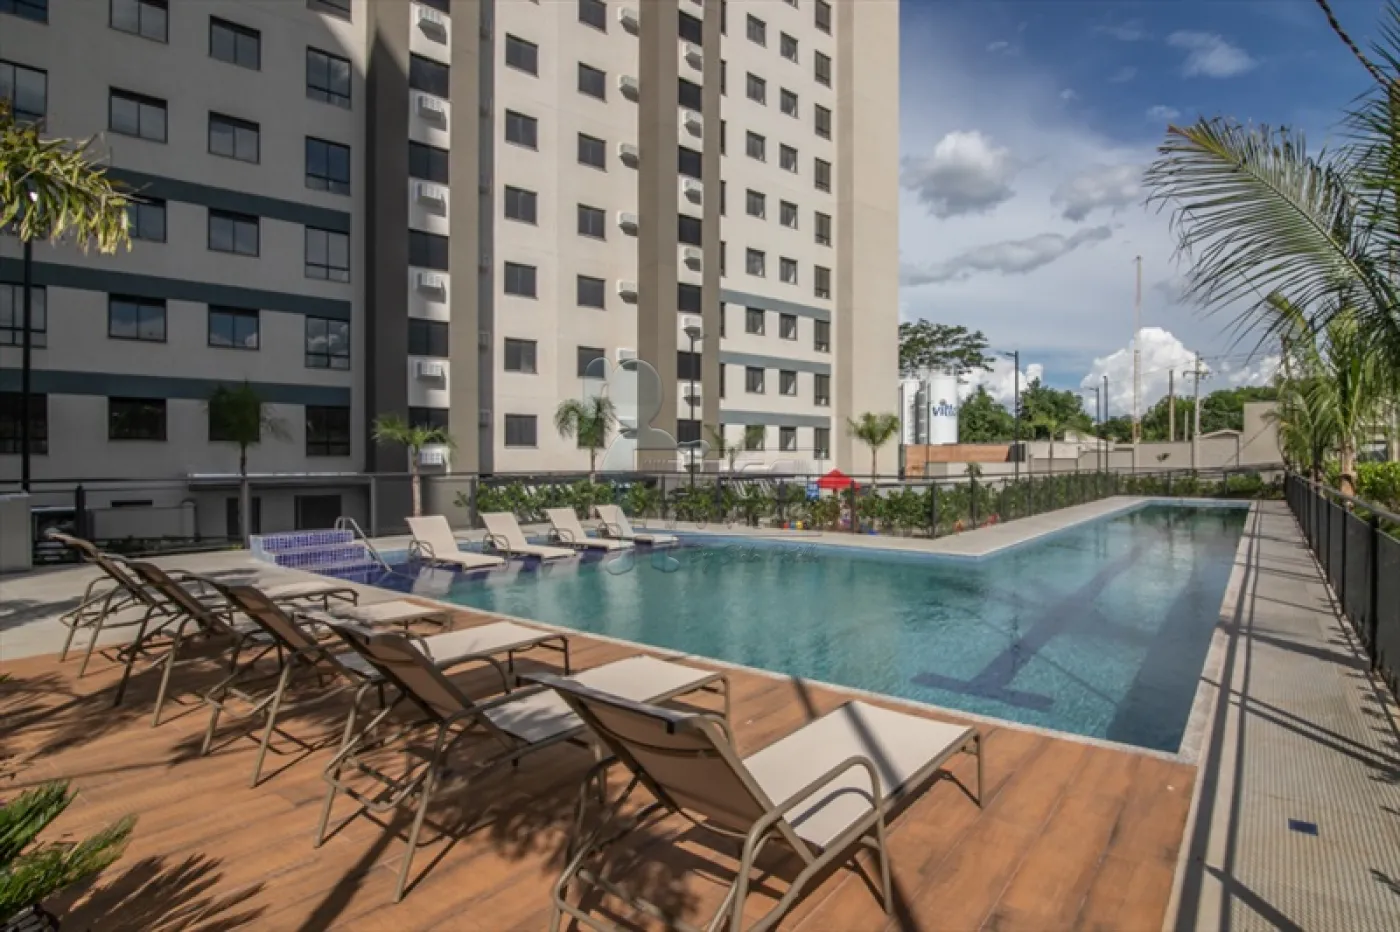 Comprar Apartamentos / Padrão em Ribeirão Preto R$ 265.000,00 - Foto 14